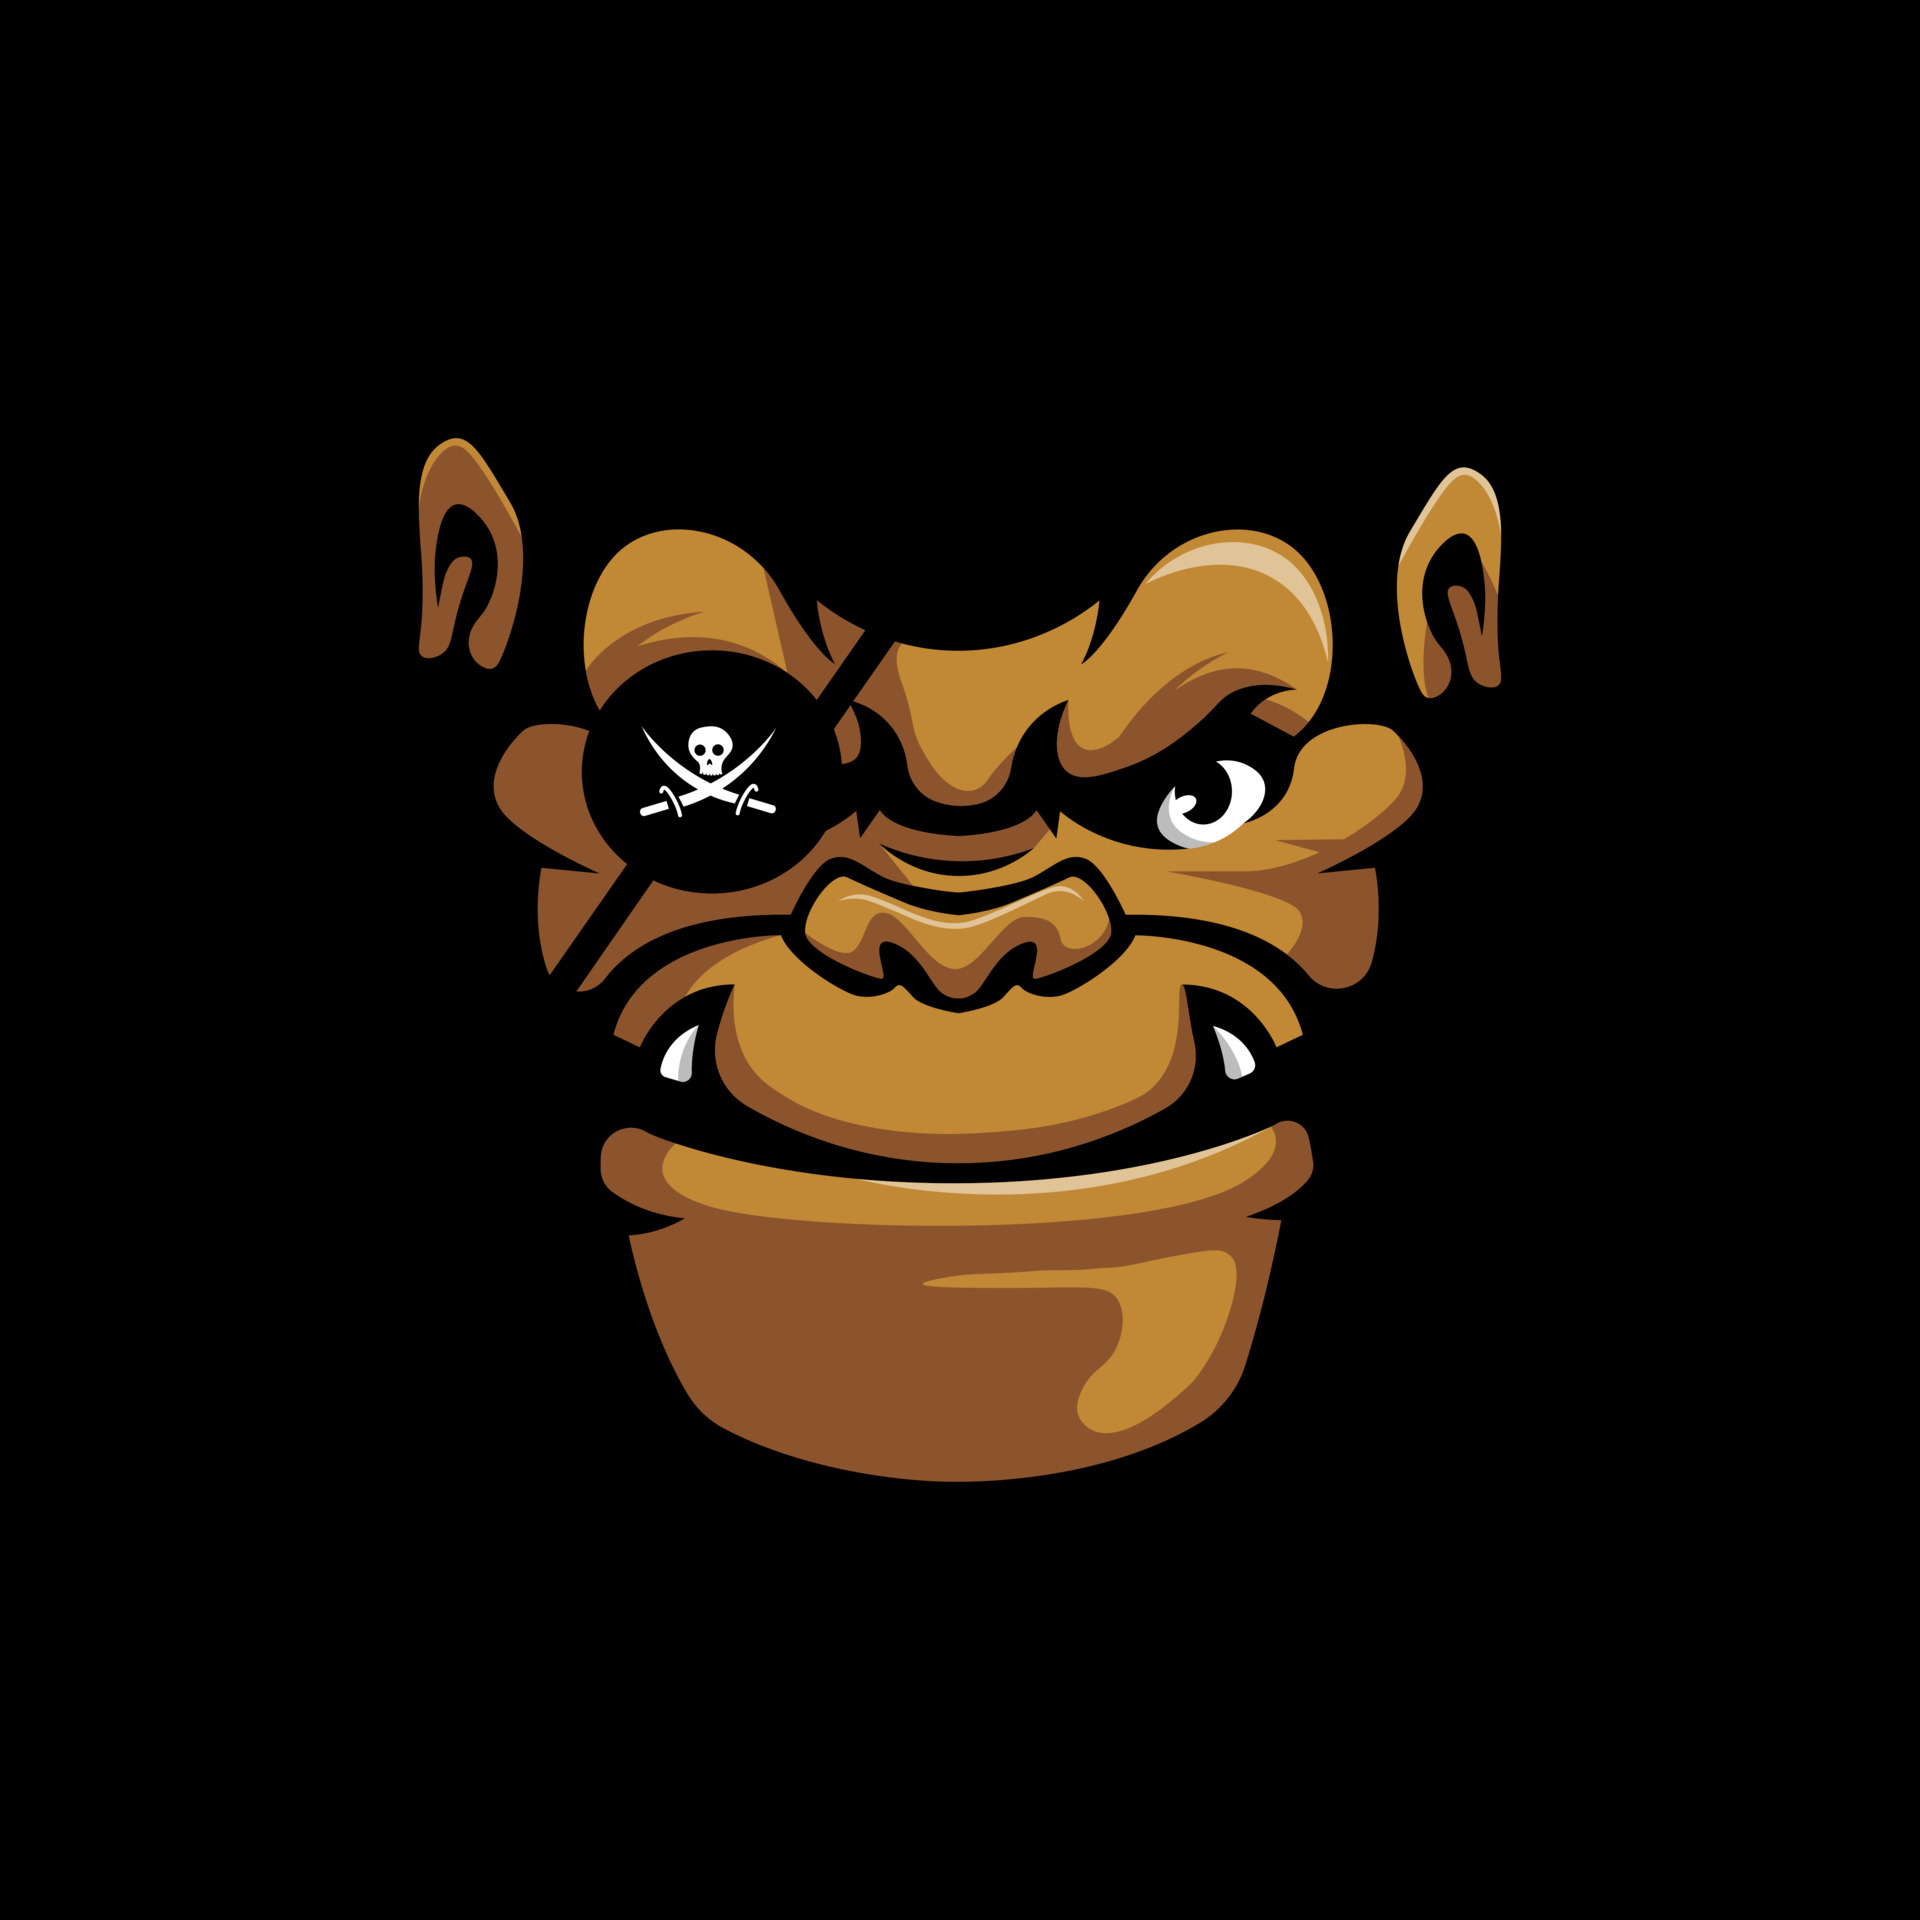 Design do logotipo do mascote pirata esport